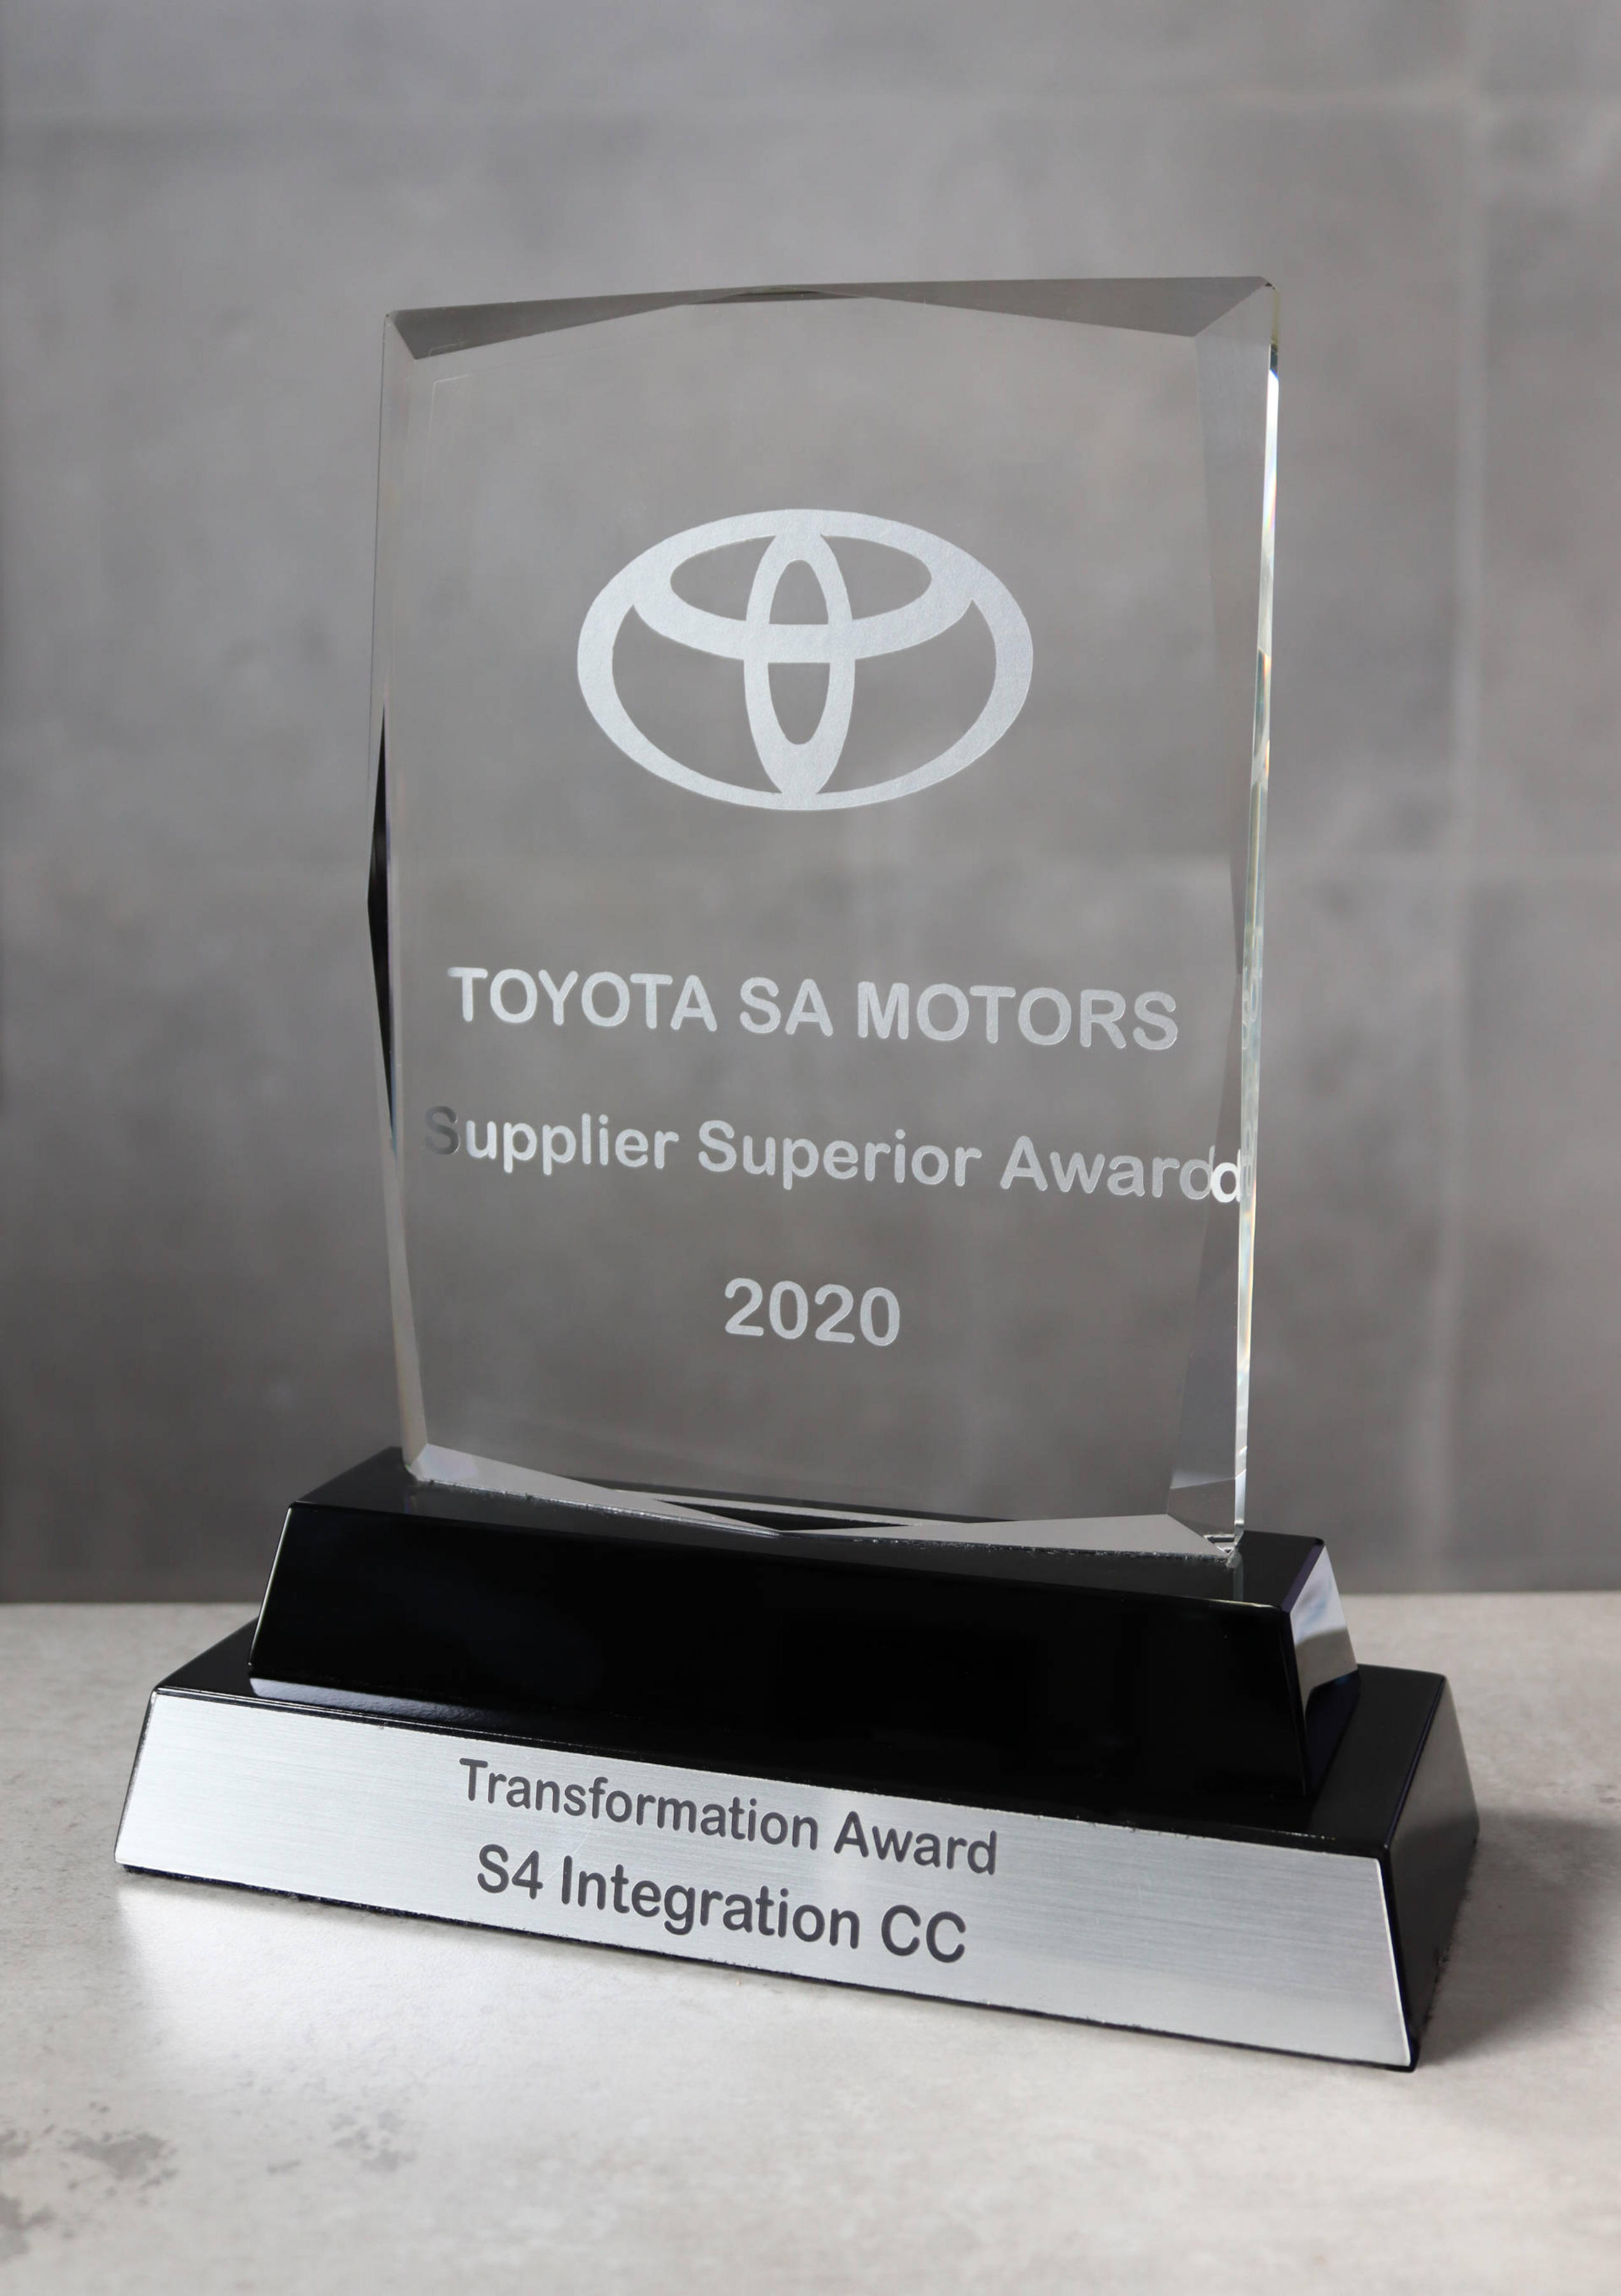 Supplier Superior Award